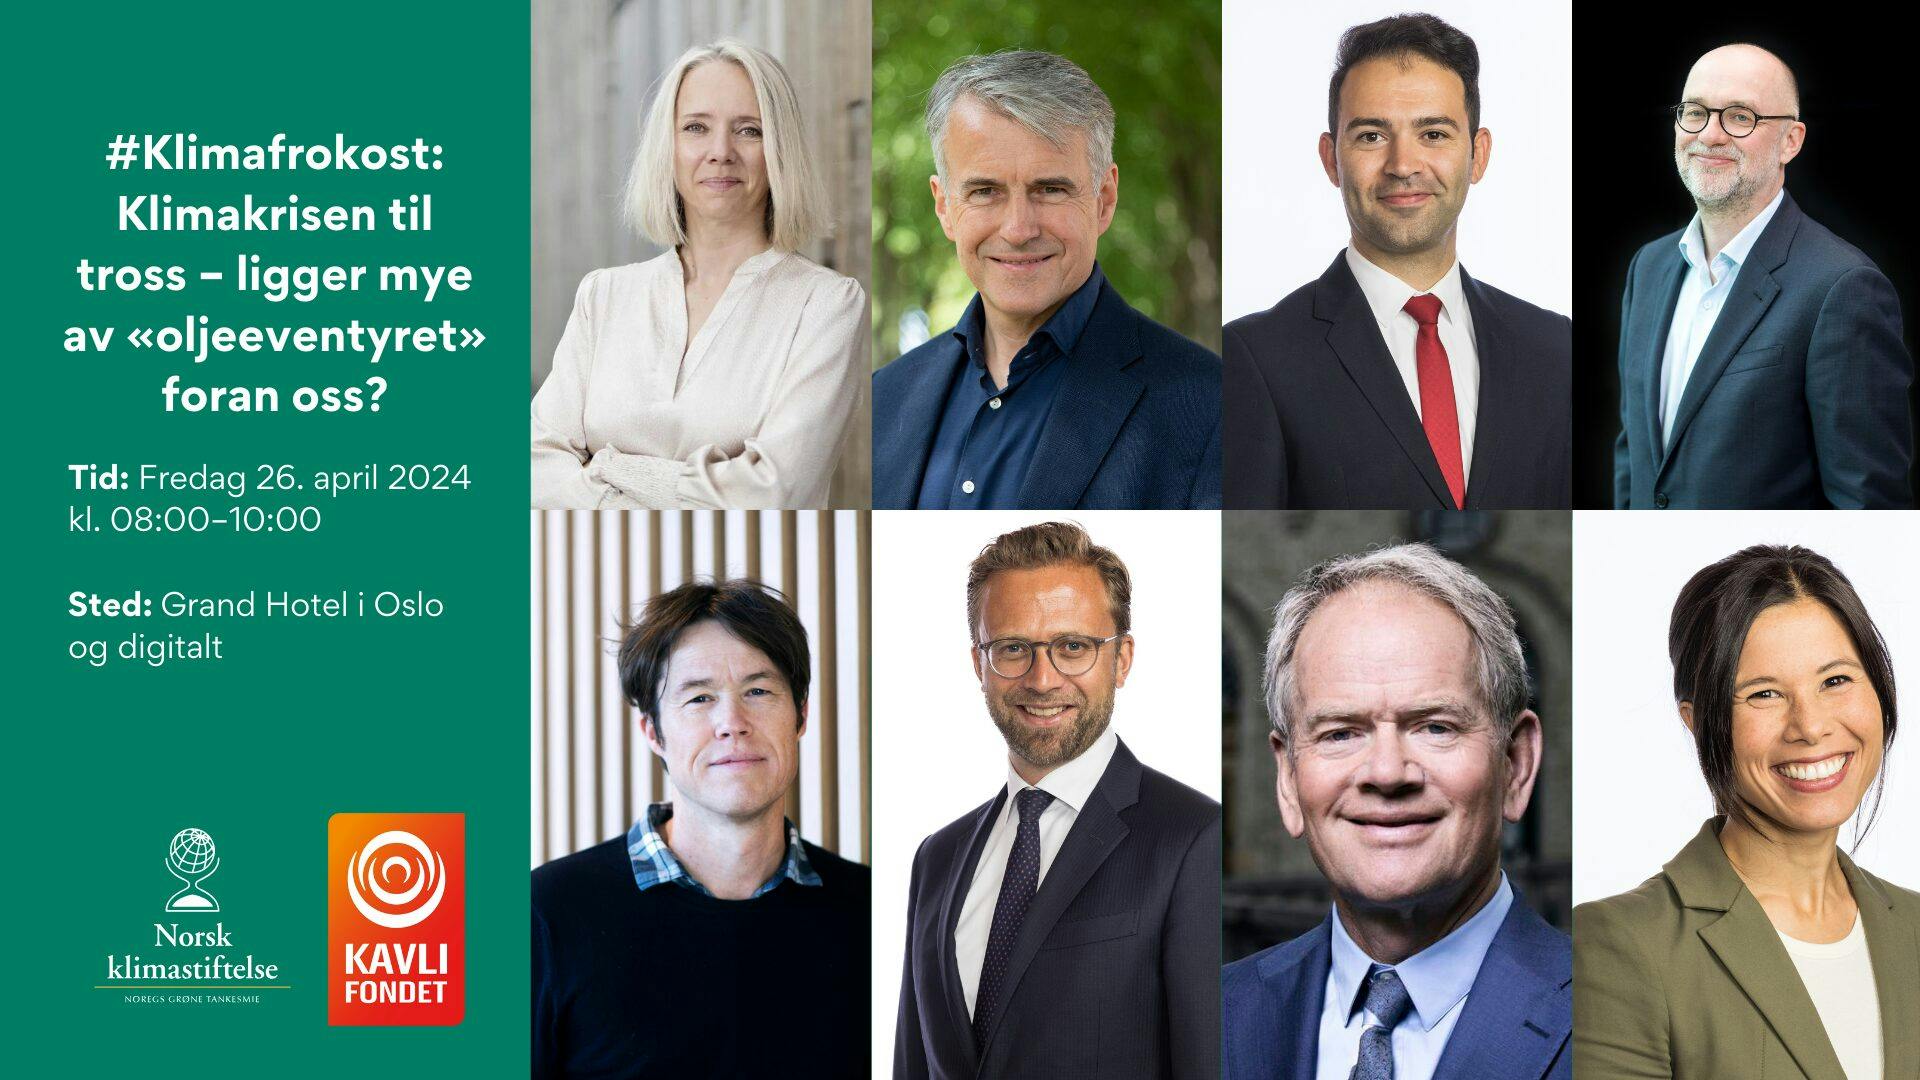 Reklamegrafikk for et klimaforskningsarrangement med portretter av åtte foredragsholdere, arrangementsdetaljer og logoer fra sponsorer, satt til 26. april 2024 på grand hotel oslo.